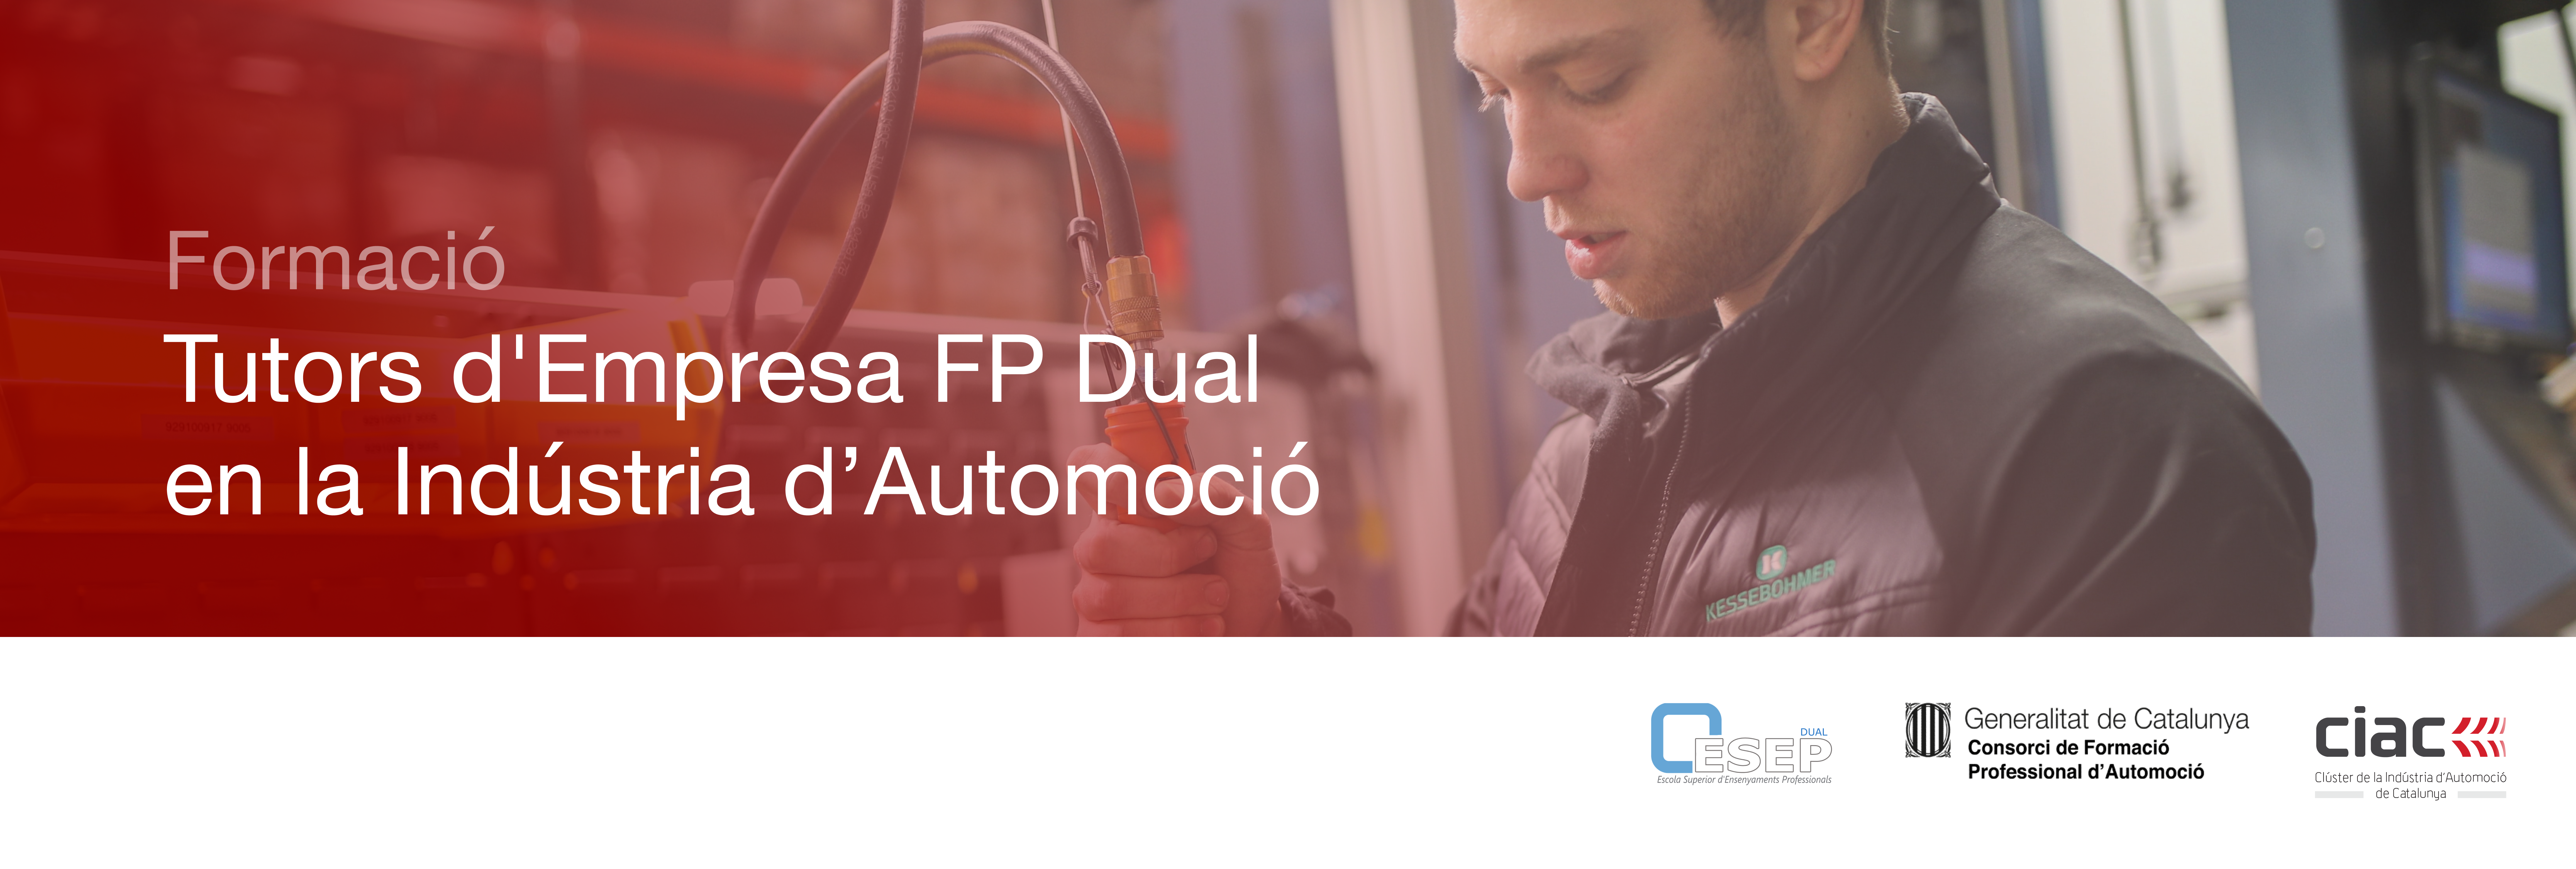 Formació per Tutors d'Empresa FP Dual en la Indústria d'Automoció